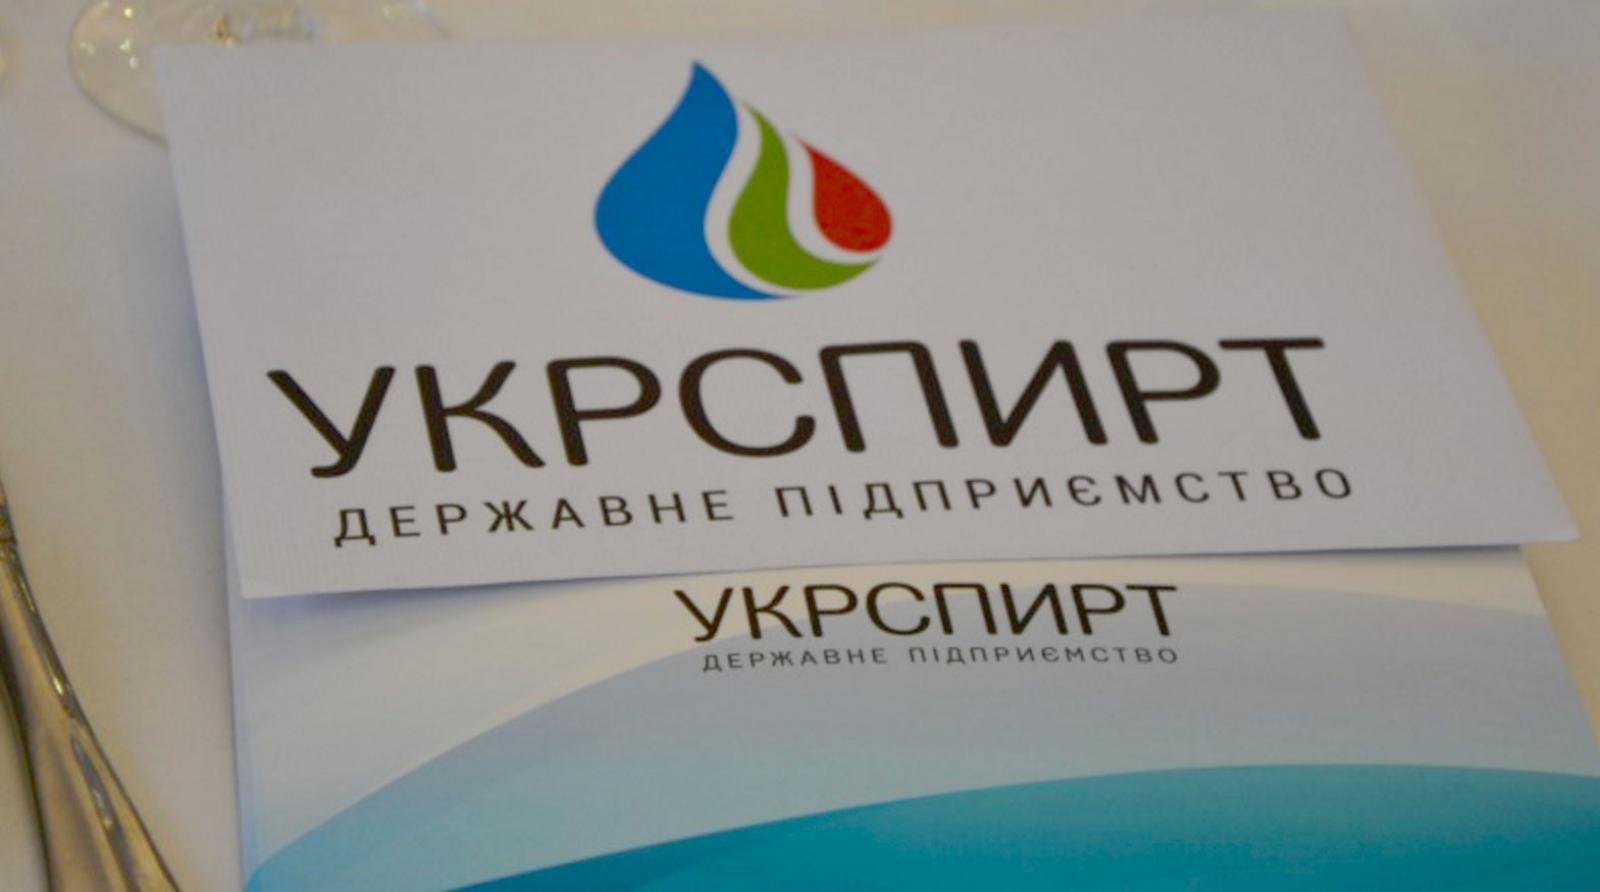 На базі Укрспирту планують запустити спиртове виробництво для внутрішнього ринку та експорту